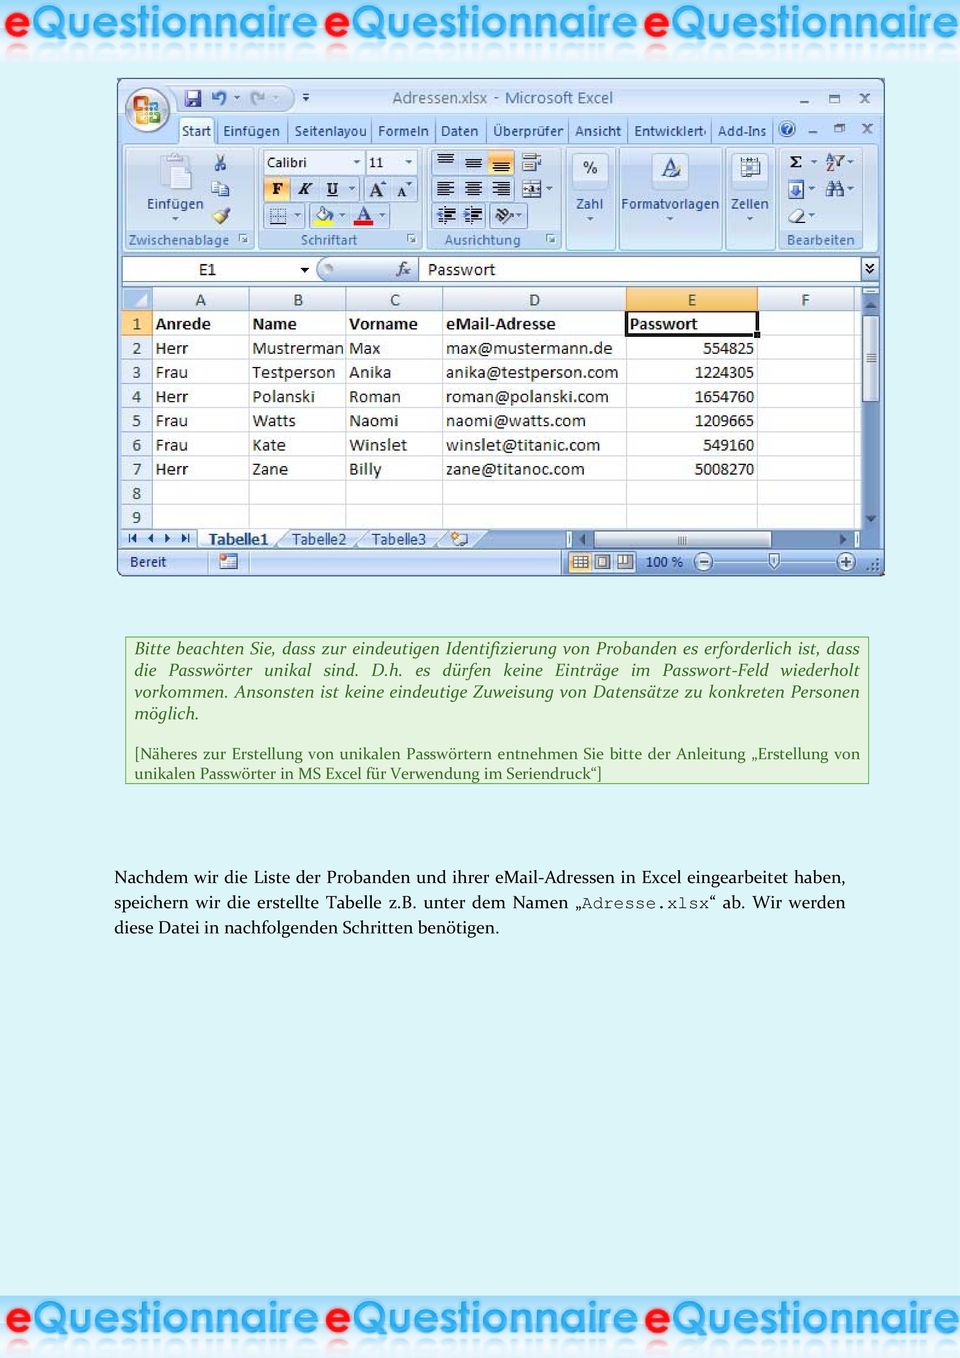 [Näheres zur Erstellung von unikalen Passwörtern entnehmen Sie bitte der Anleitung Erstellung von unikalen Passwörter in MS Excel für Verwendung im Seriendruck ]